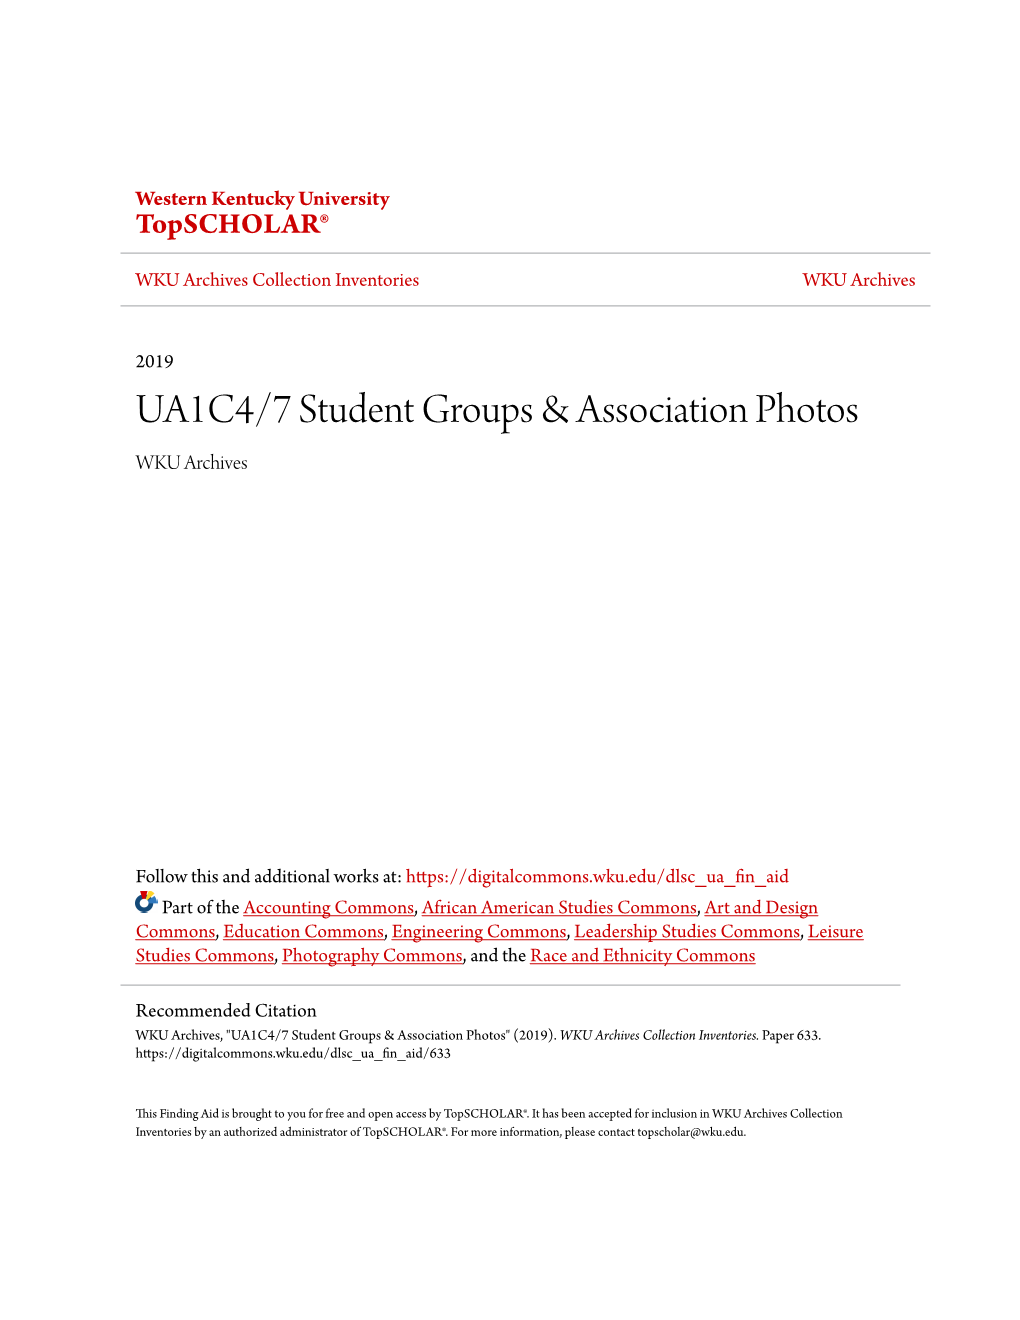 UA1C4/7 Student Groups & Association Photos